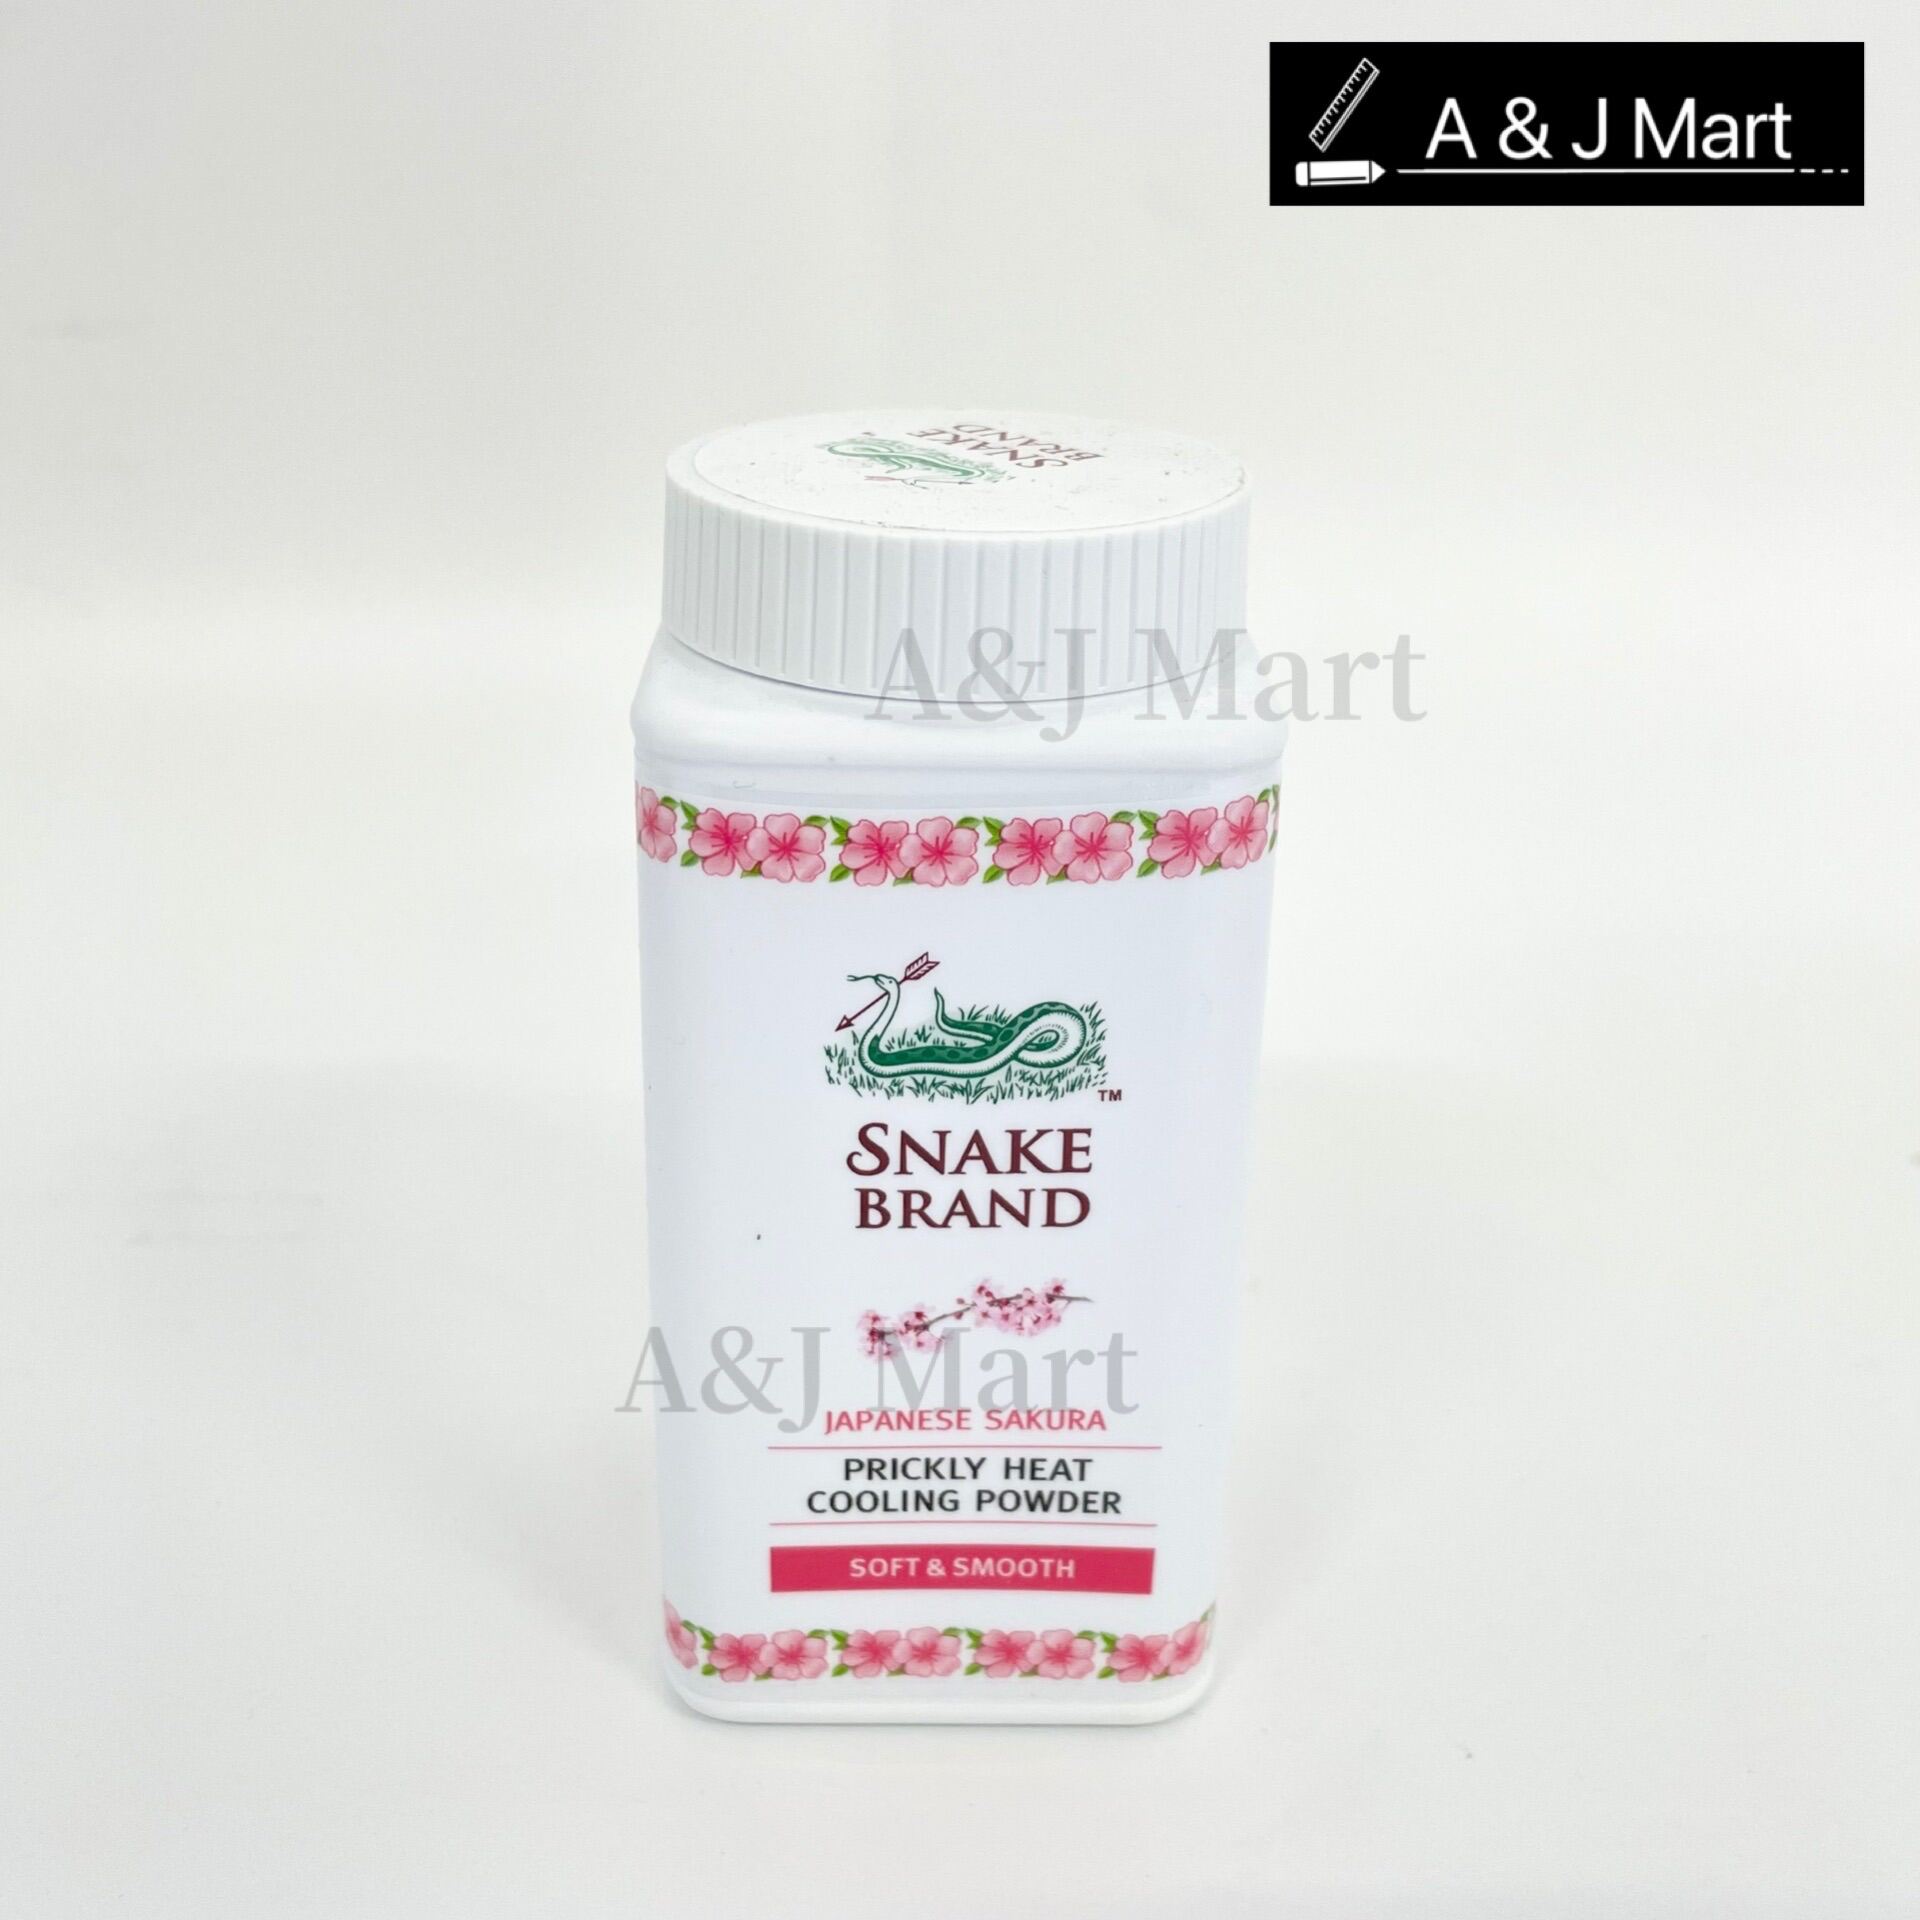 Snake brand powder / snake powder. 50g